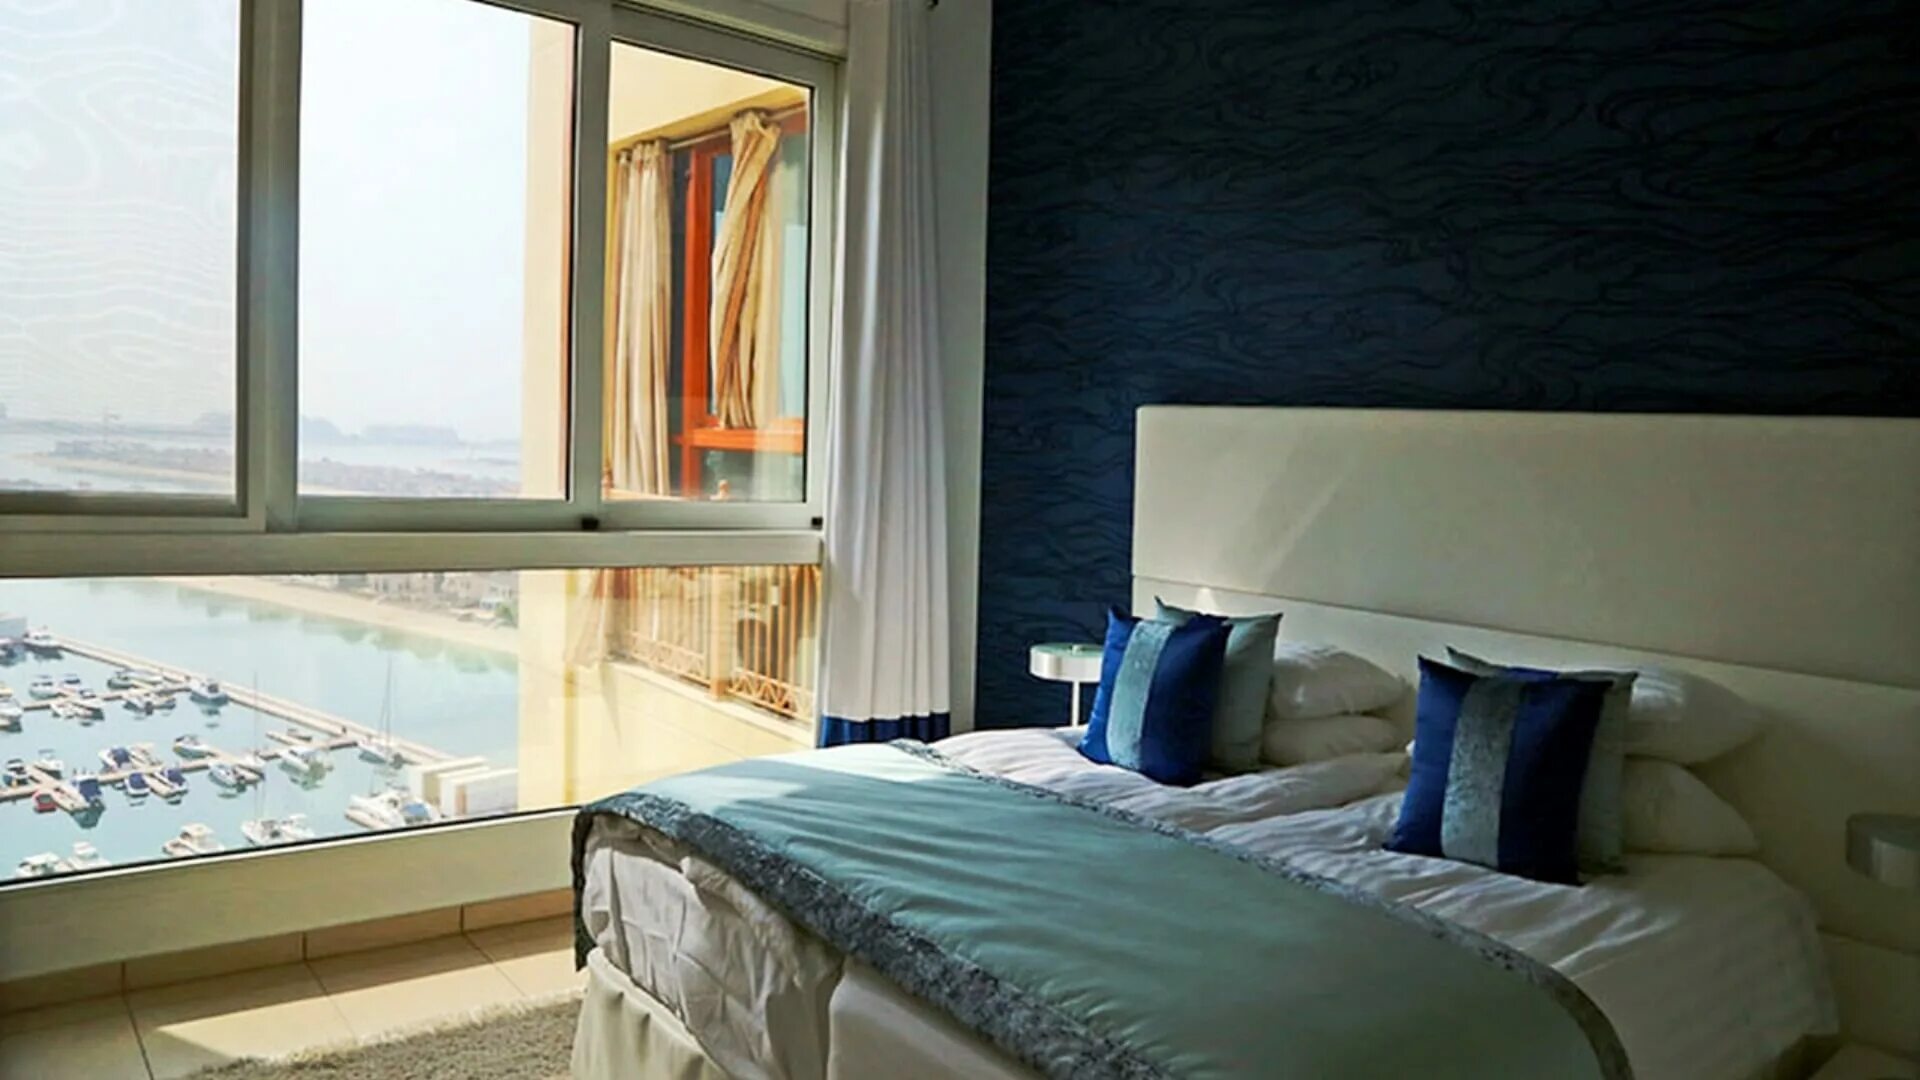 Квартира в Дубае. Дубай квартиры обычные. Квартиры в Дубае бюджетные. Интерьер квартиры в Дубае. Аренда жилья в дубае